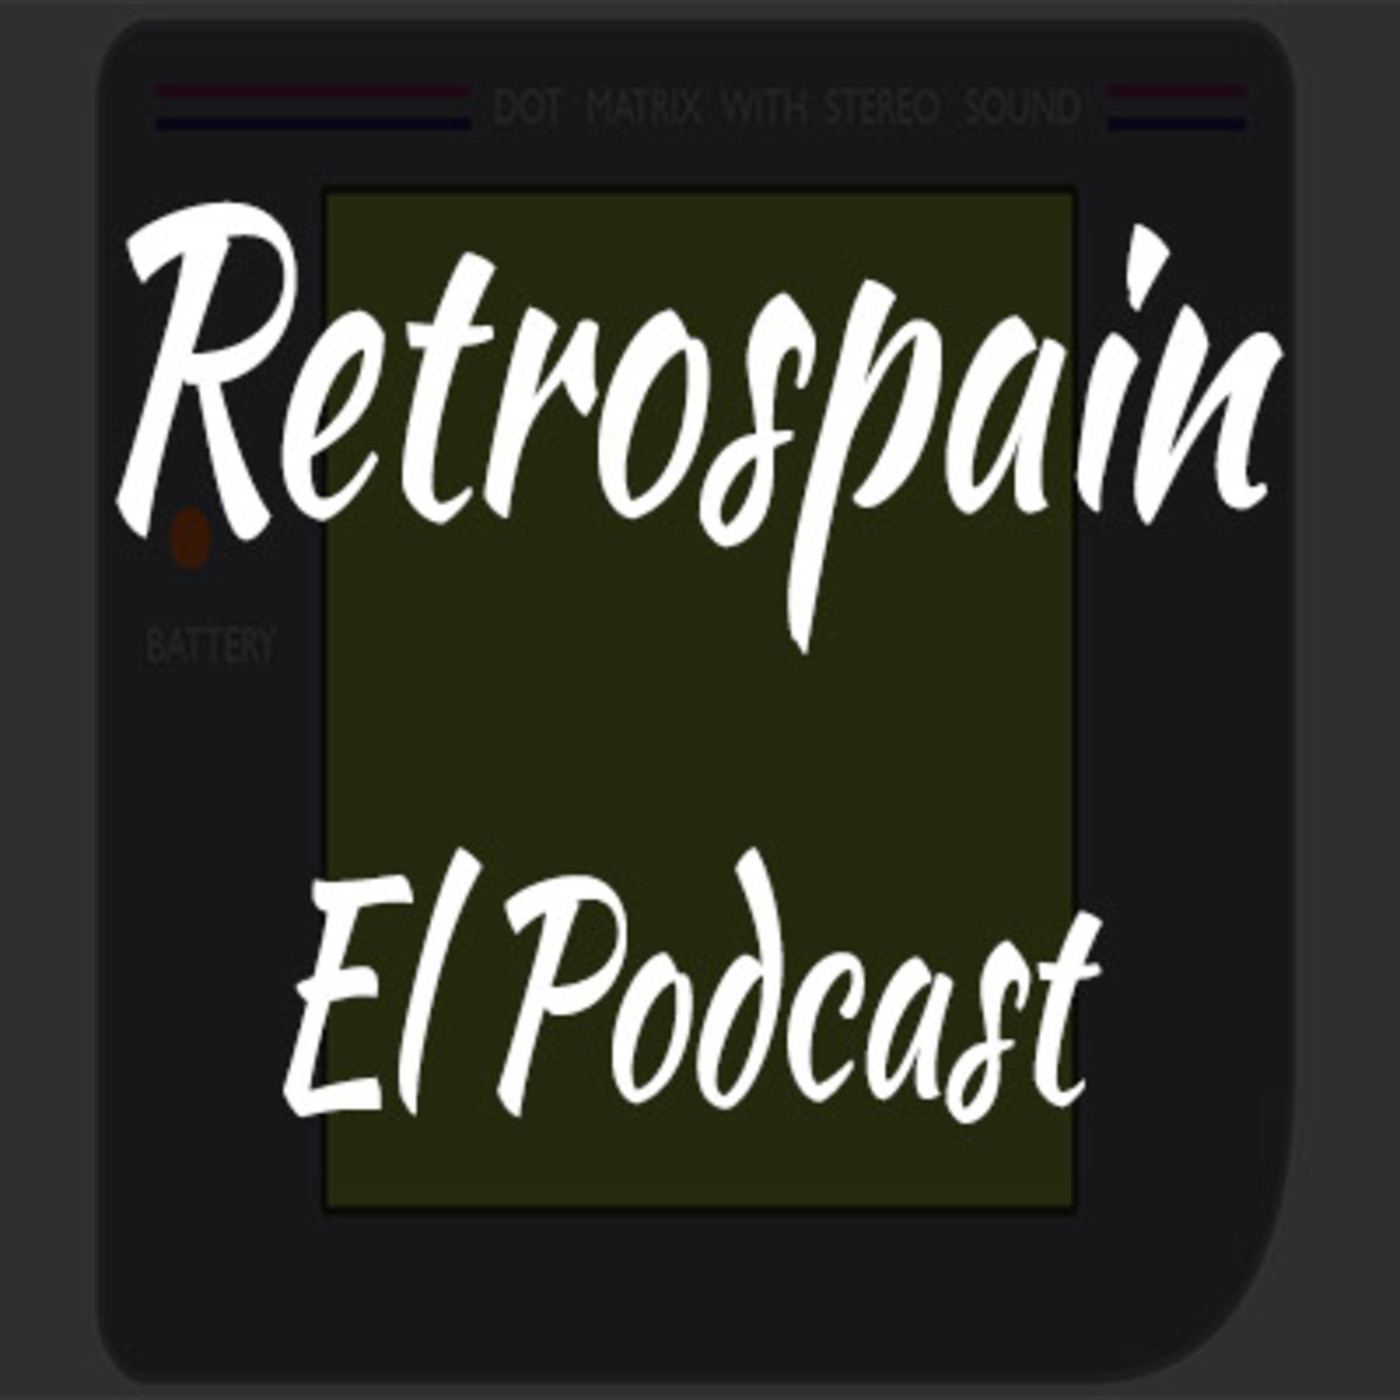 Retrospain el Podcast